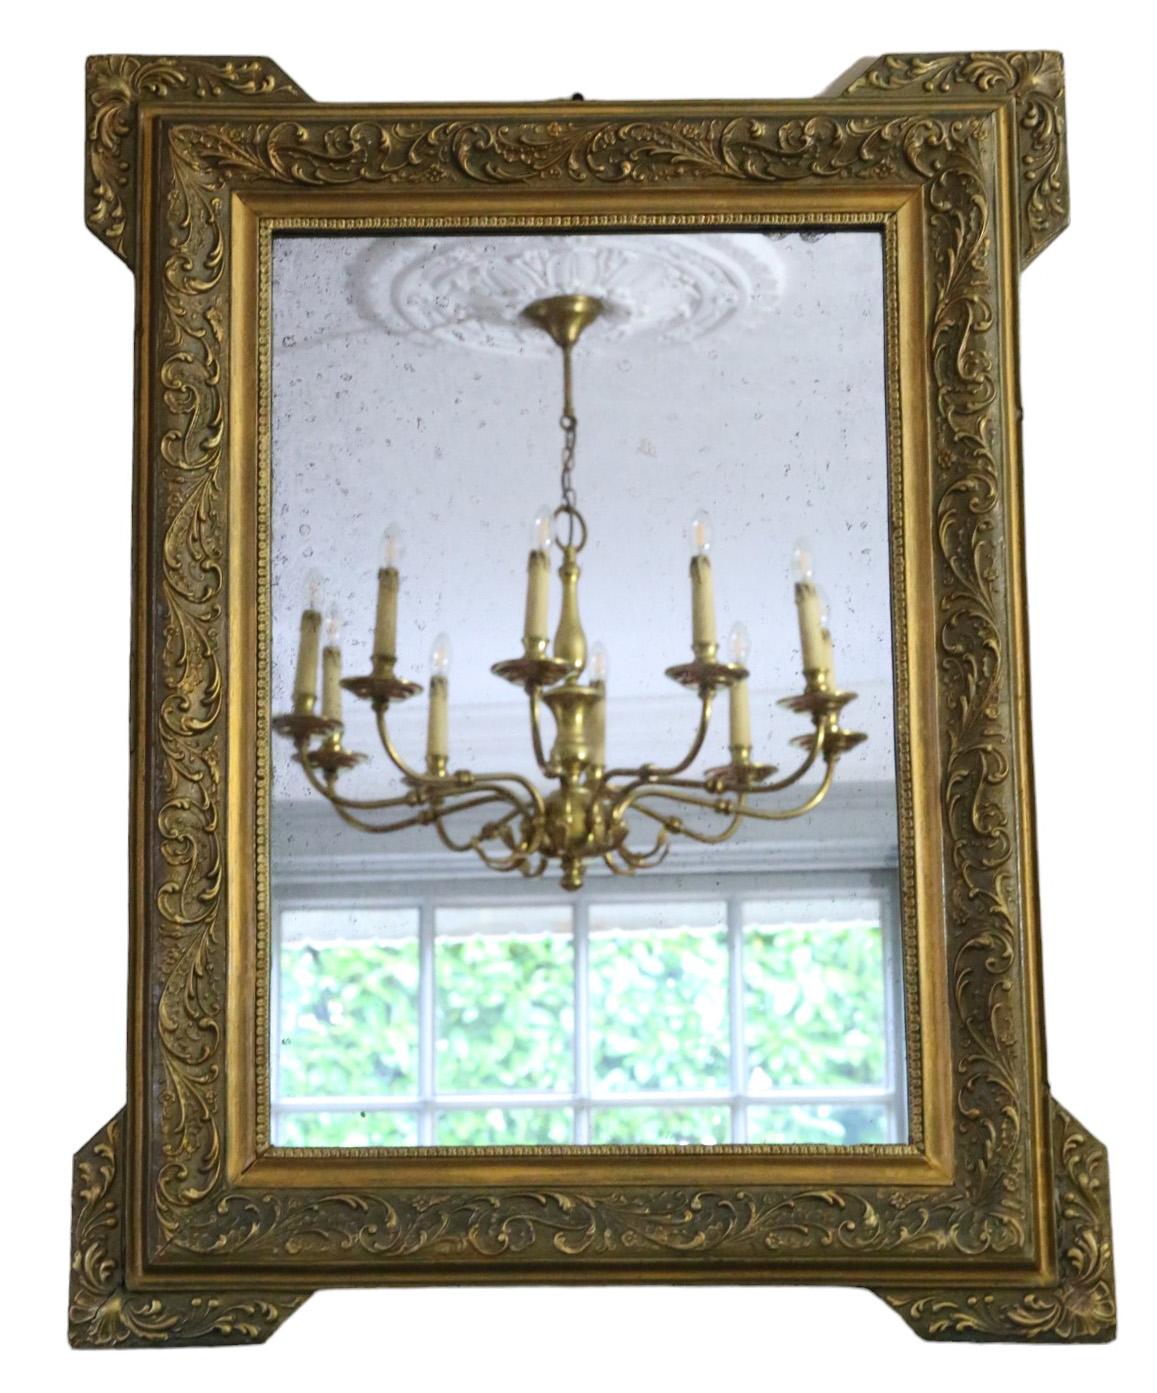 Antike C1900 großen vergoldeten Overmantle Wandspiegel von feiner Qualität, mit einem dekorativen Blatt-Design verziert.

Dieser Spiegel besticht durch sein schlichtes, aber markantes Design und verleiht jedem geeigneten Raum Charakter. Der Rahmen